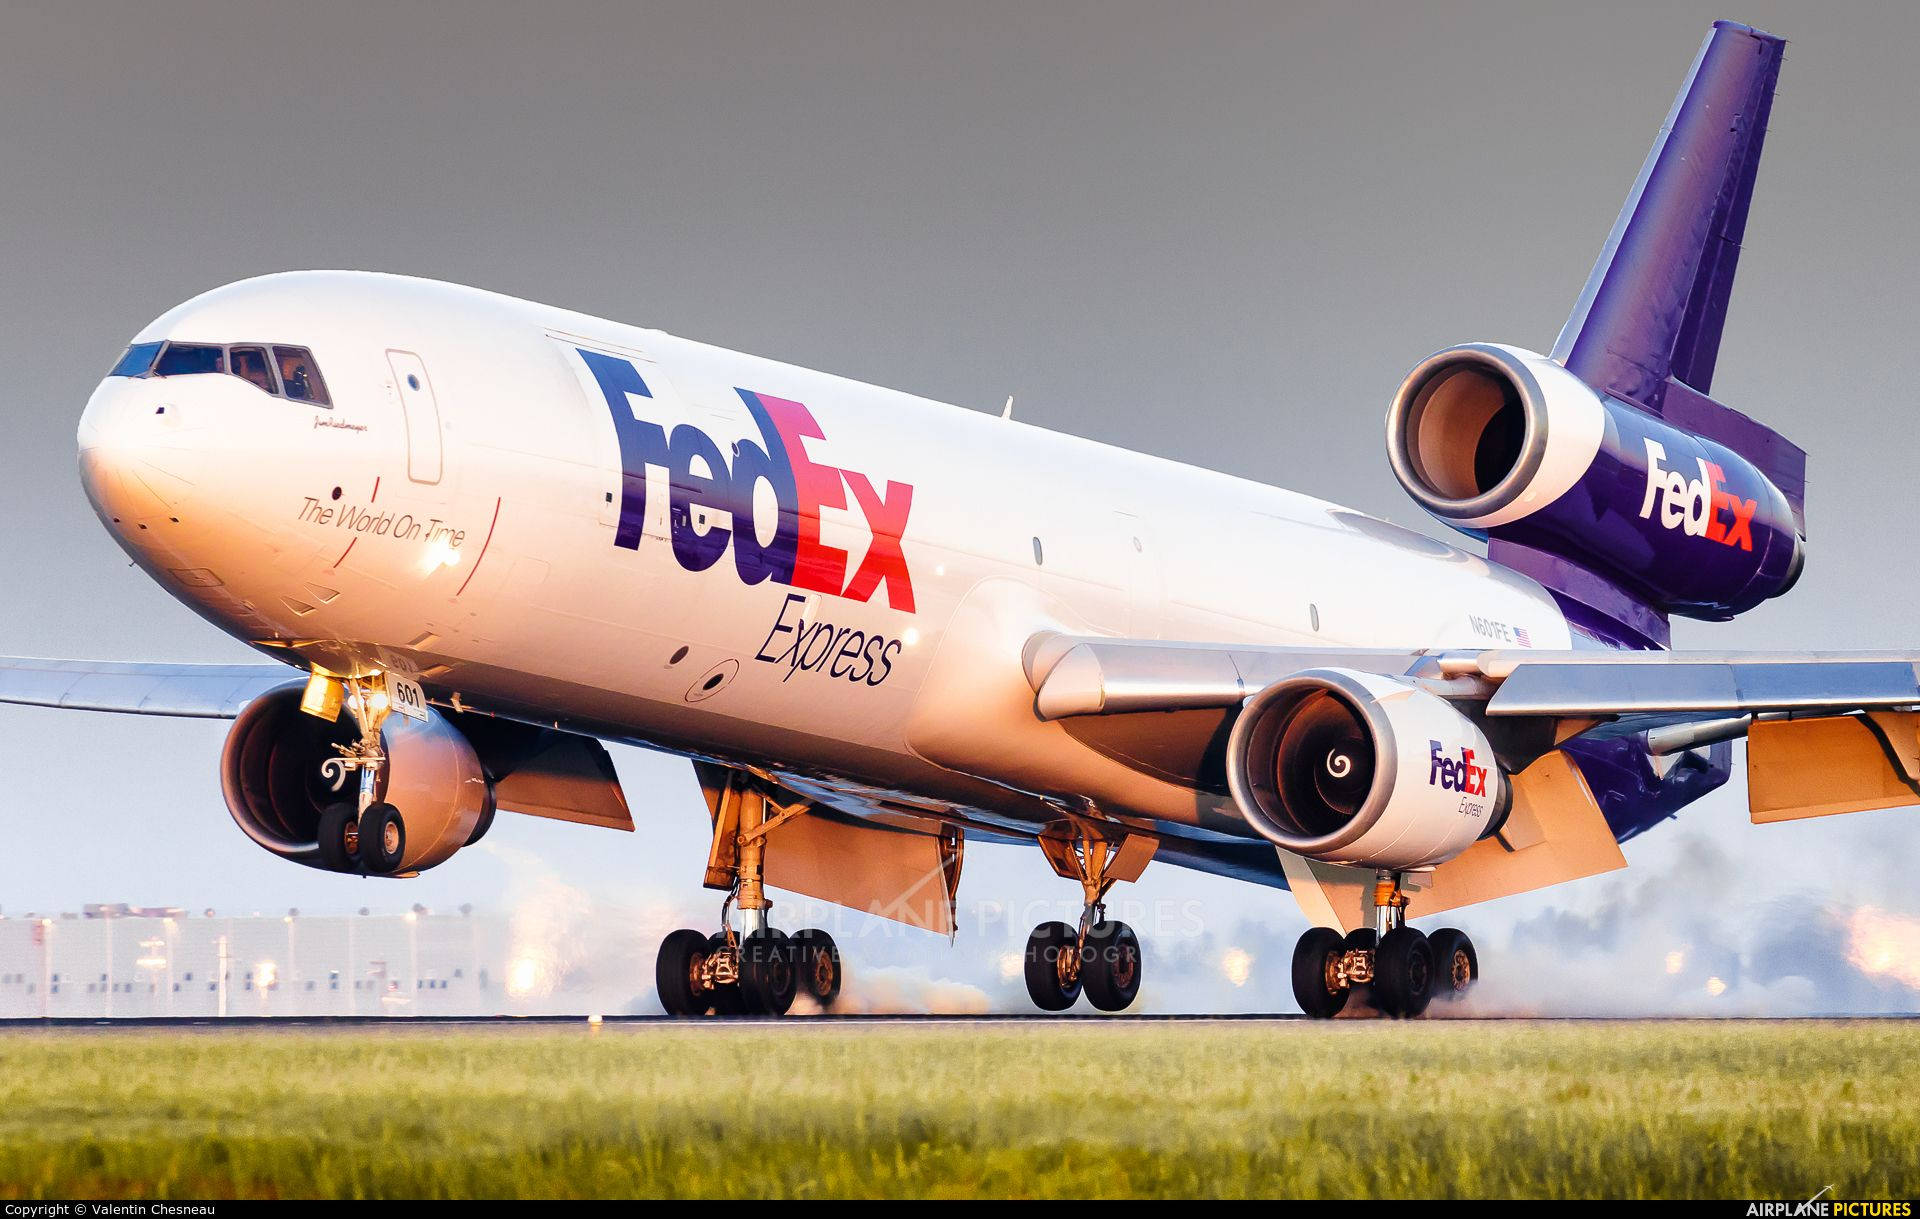 Fedex Express Cargo Plane Background